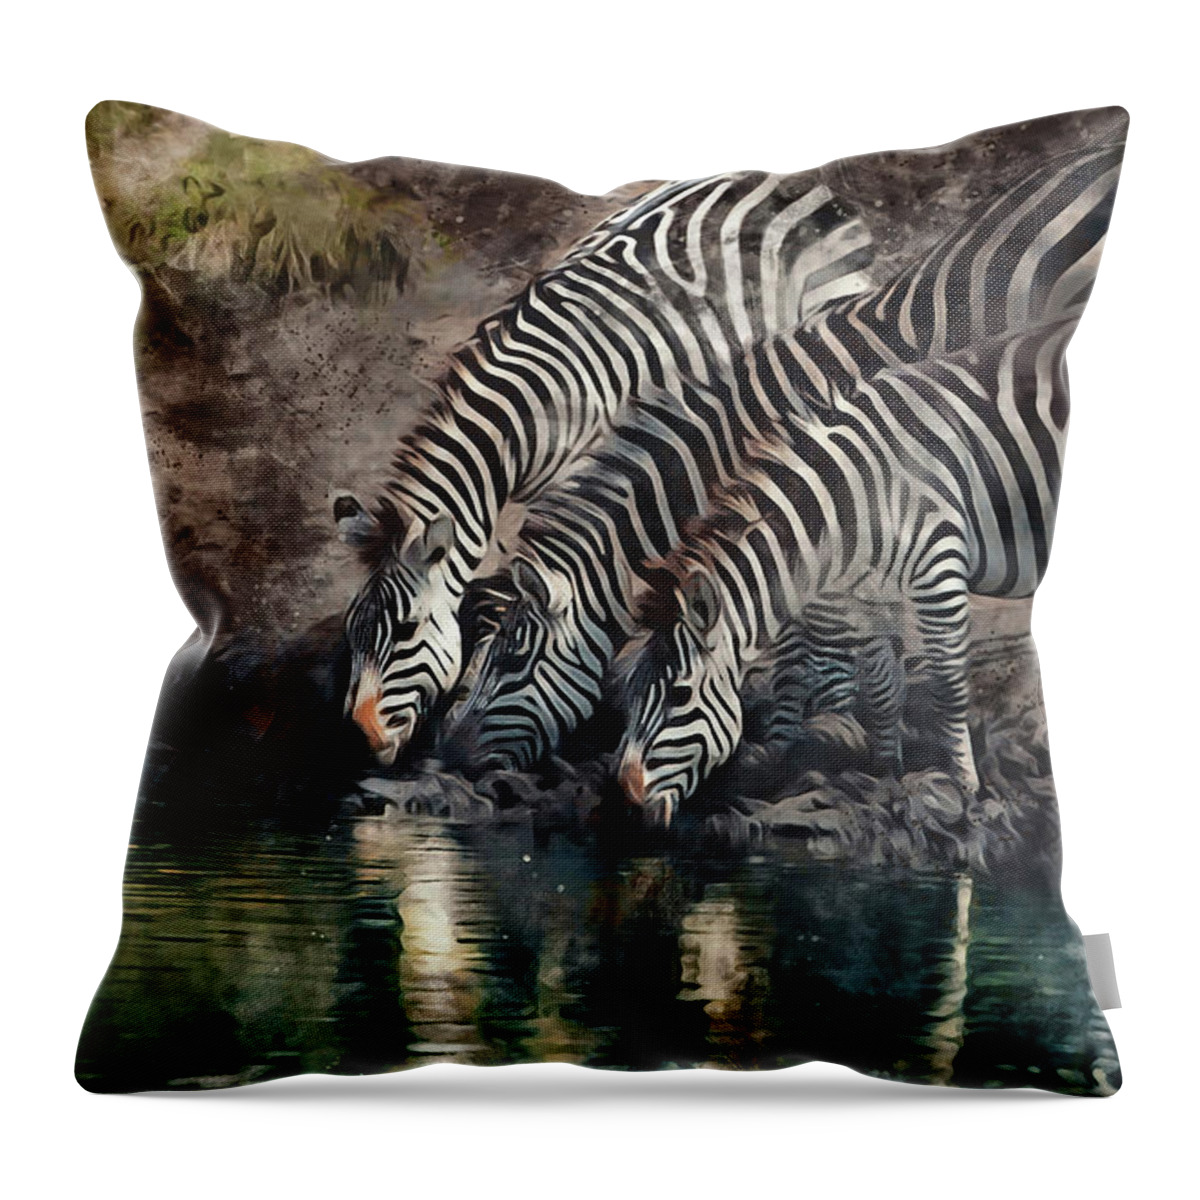 Zebra Throw Pillow featuring the digital art The Waterhole by Peter Kennett